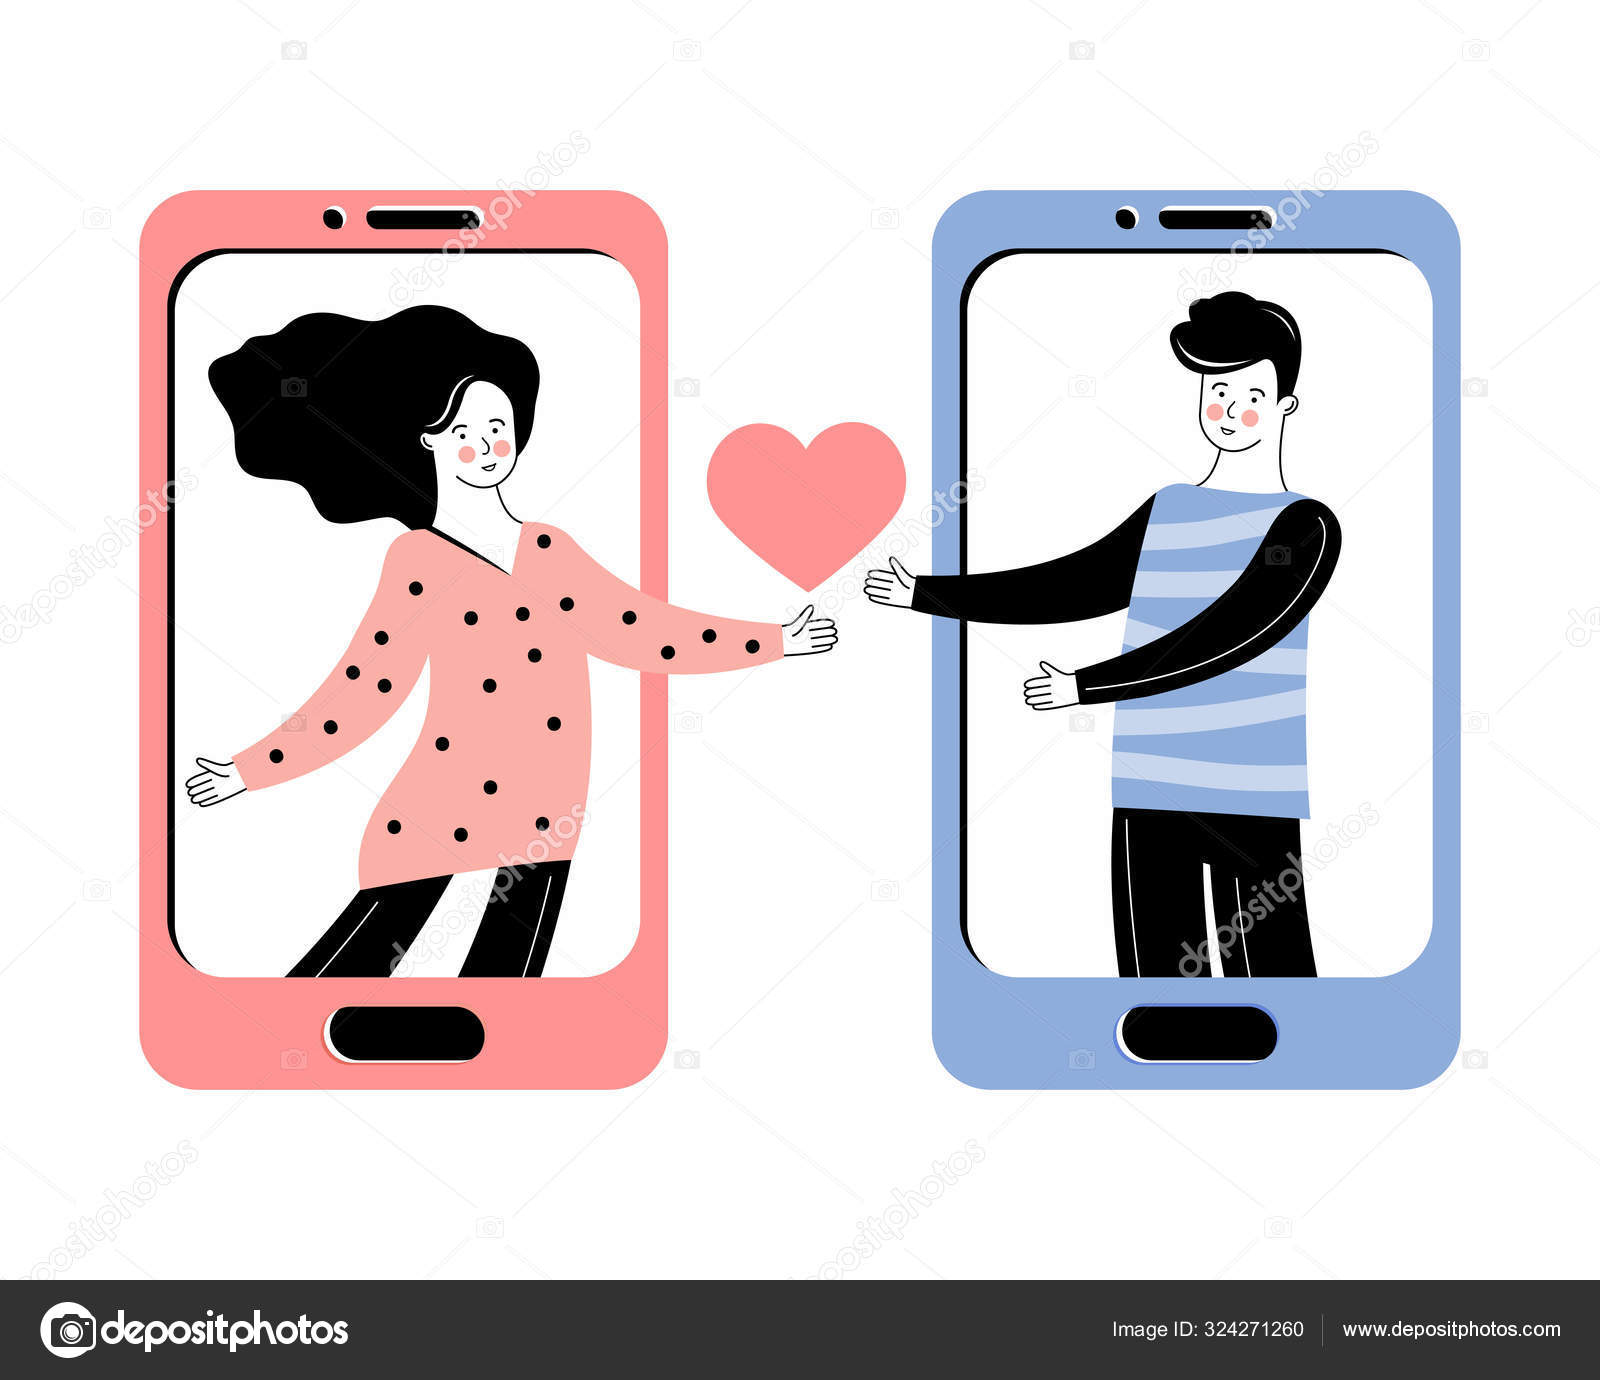 Hitta kärleken på nätet – guide till alla sajter